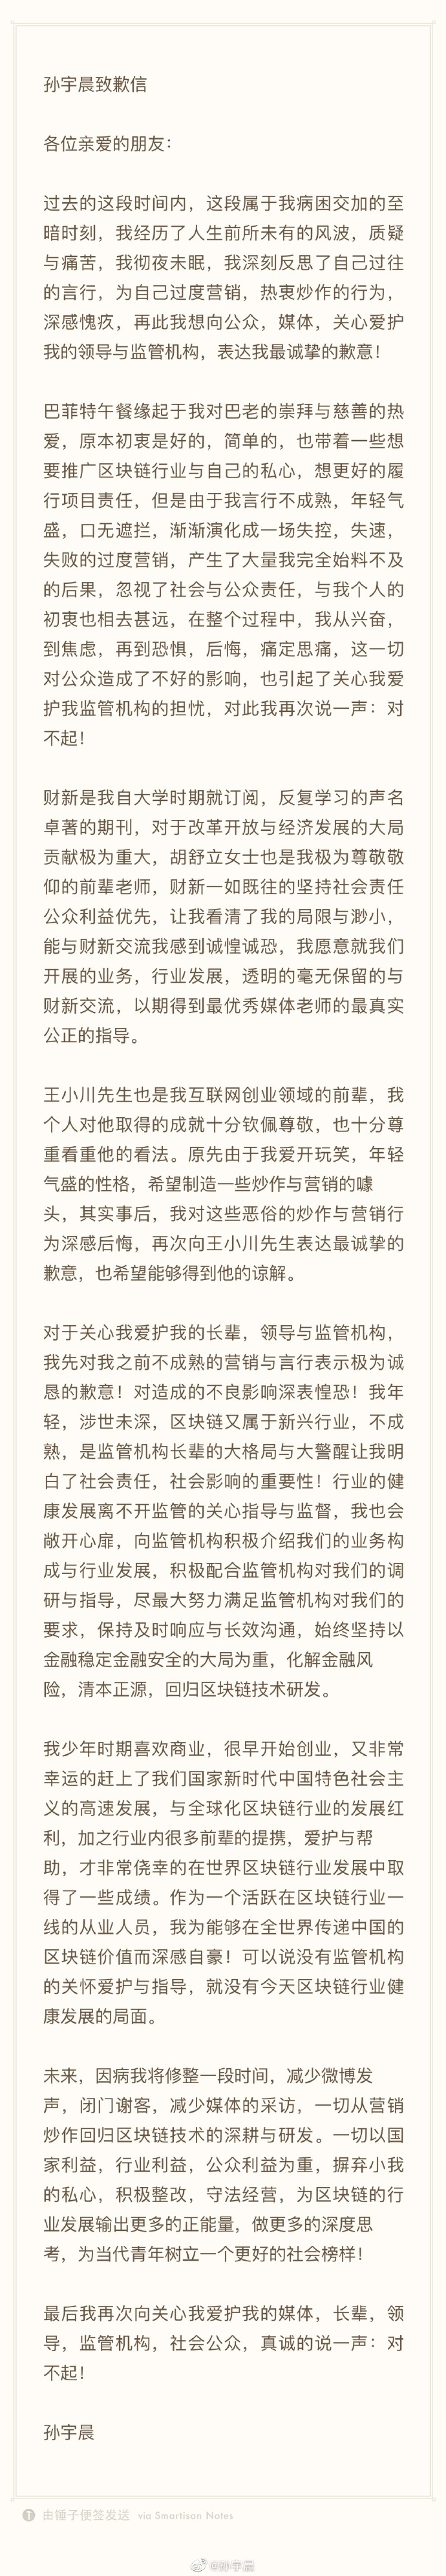 孙宇晨发致歉信:为过度营销、炒作的行为深感愧疚